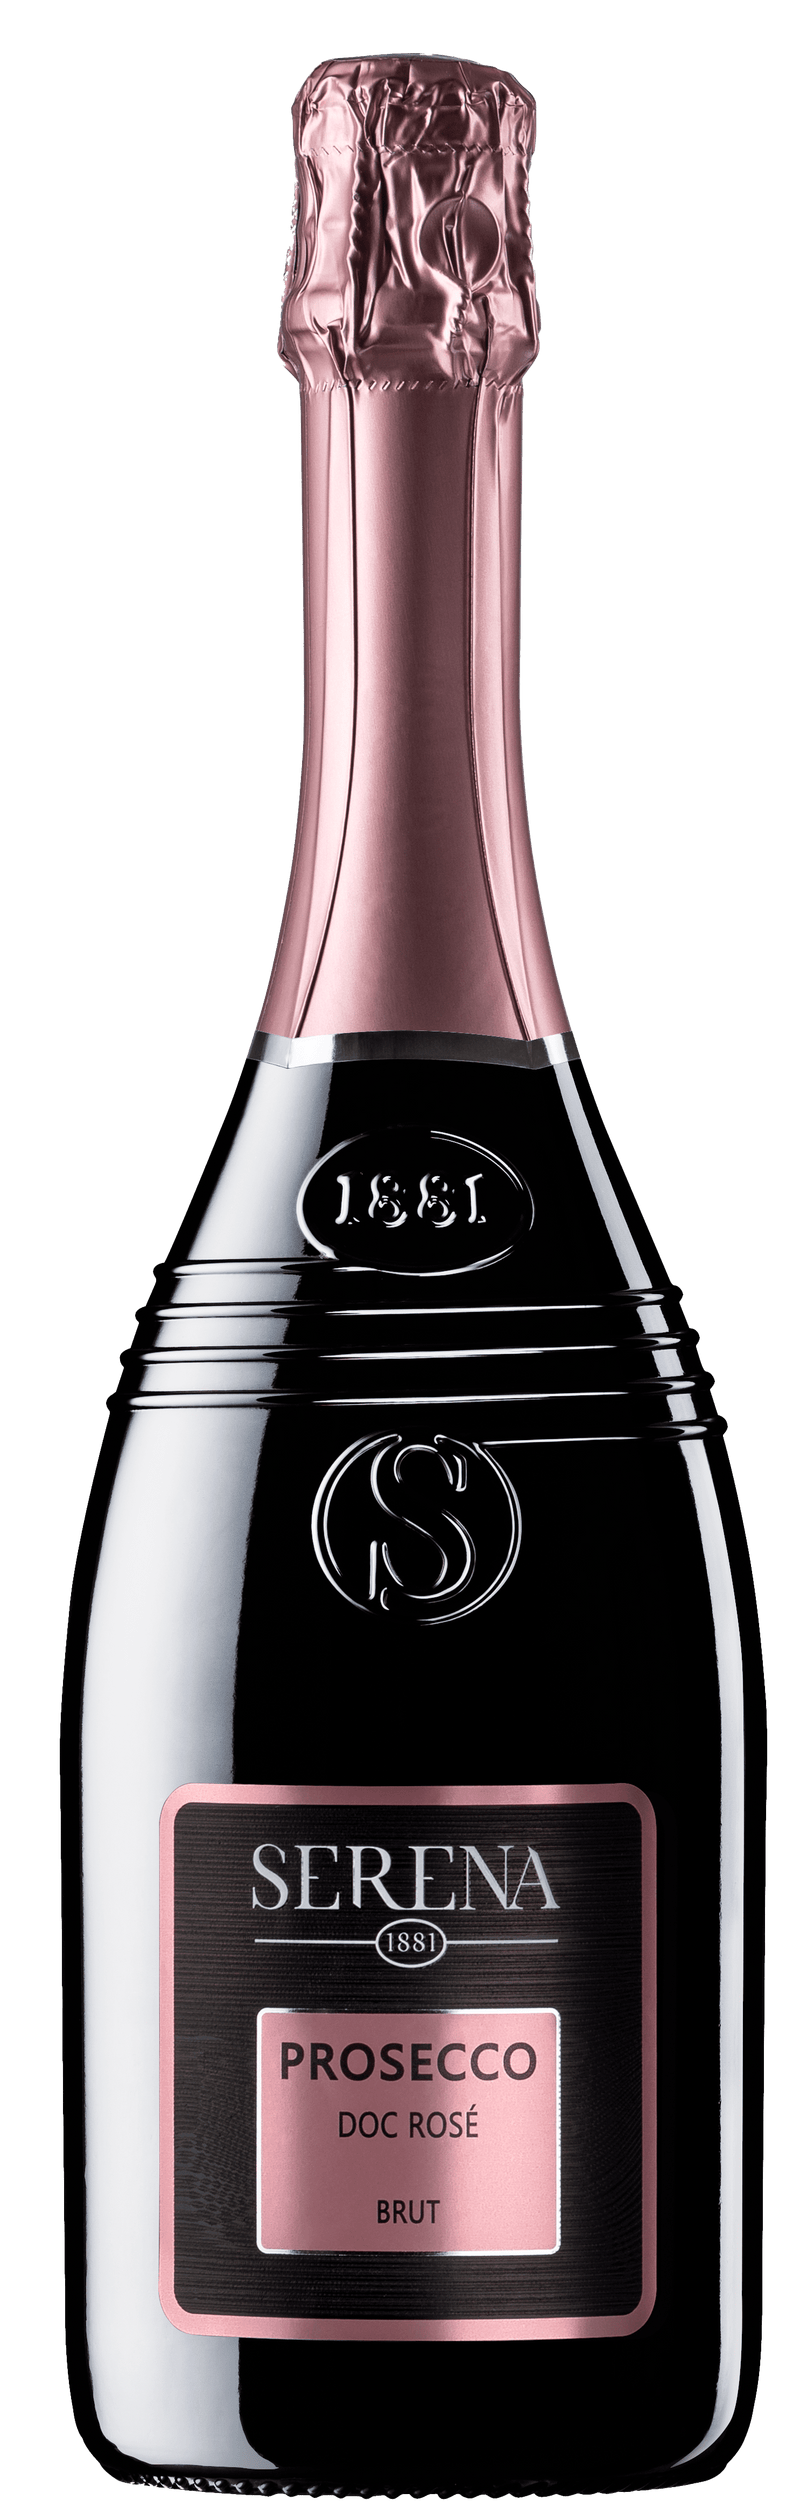 Serena Wines 1881 Prosecco Prosecco DOC Rosé Brut NV 75cl